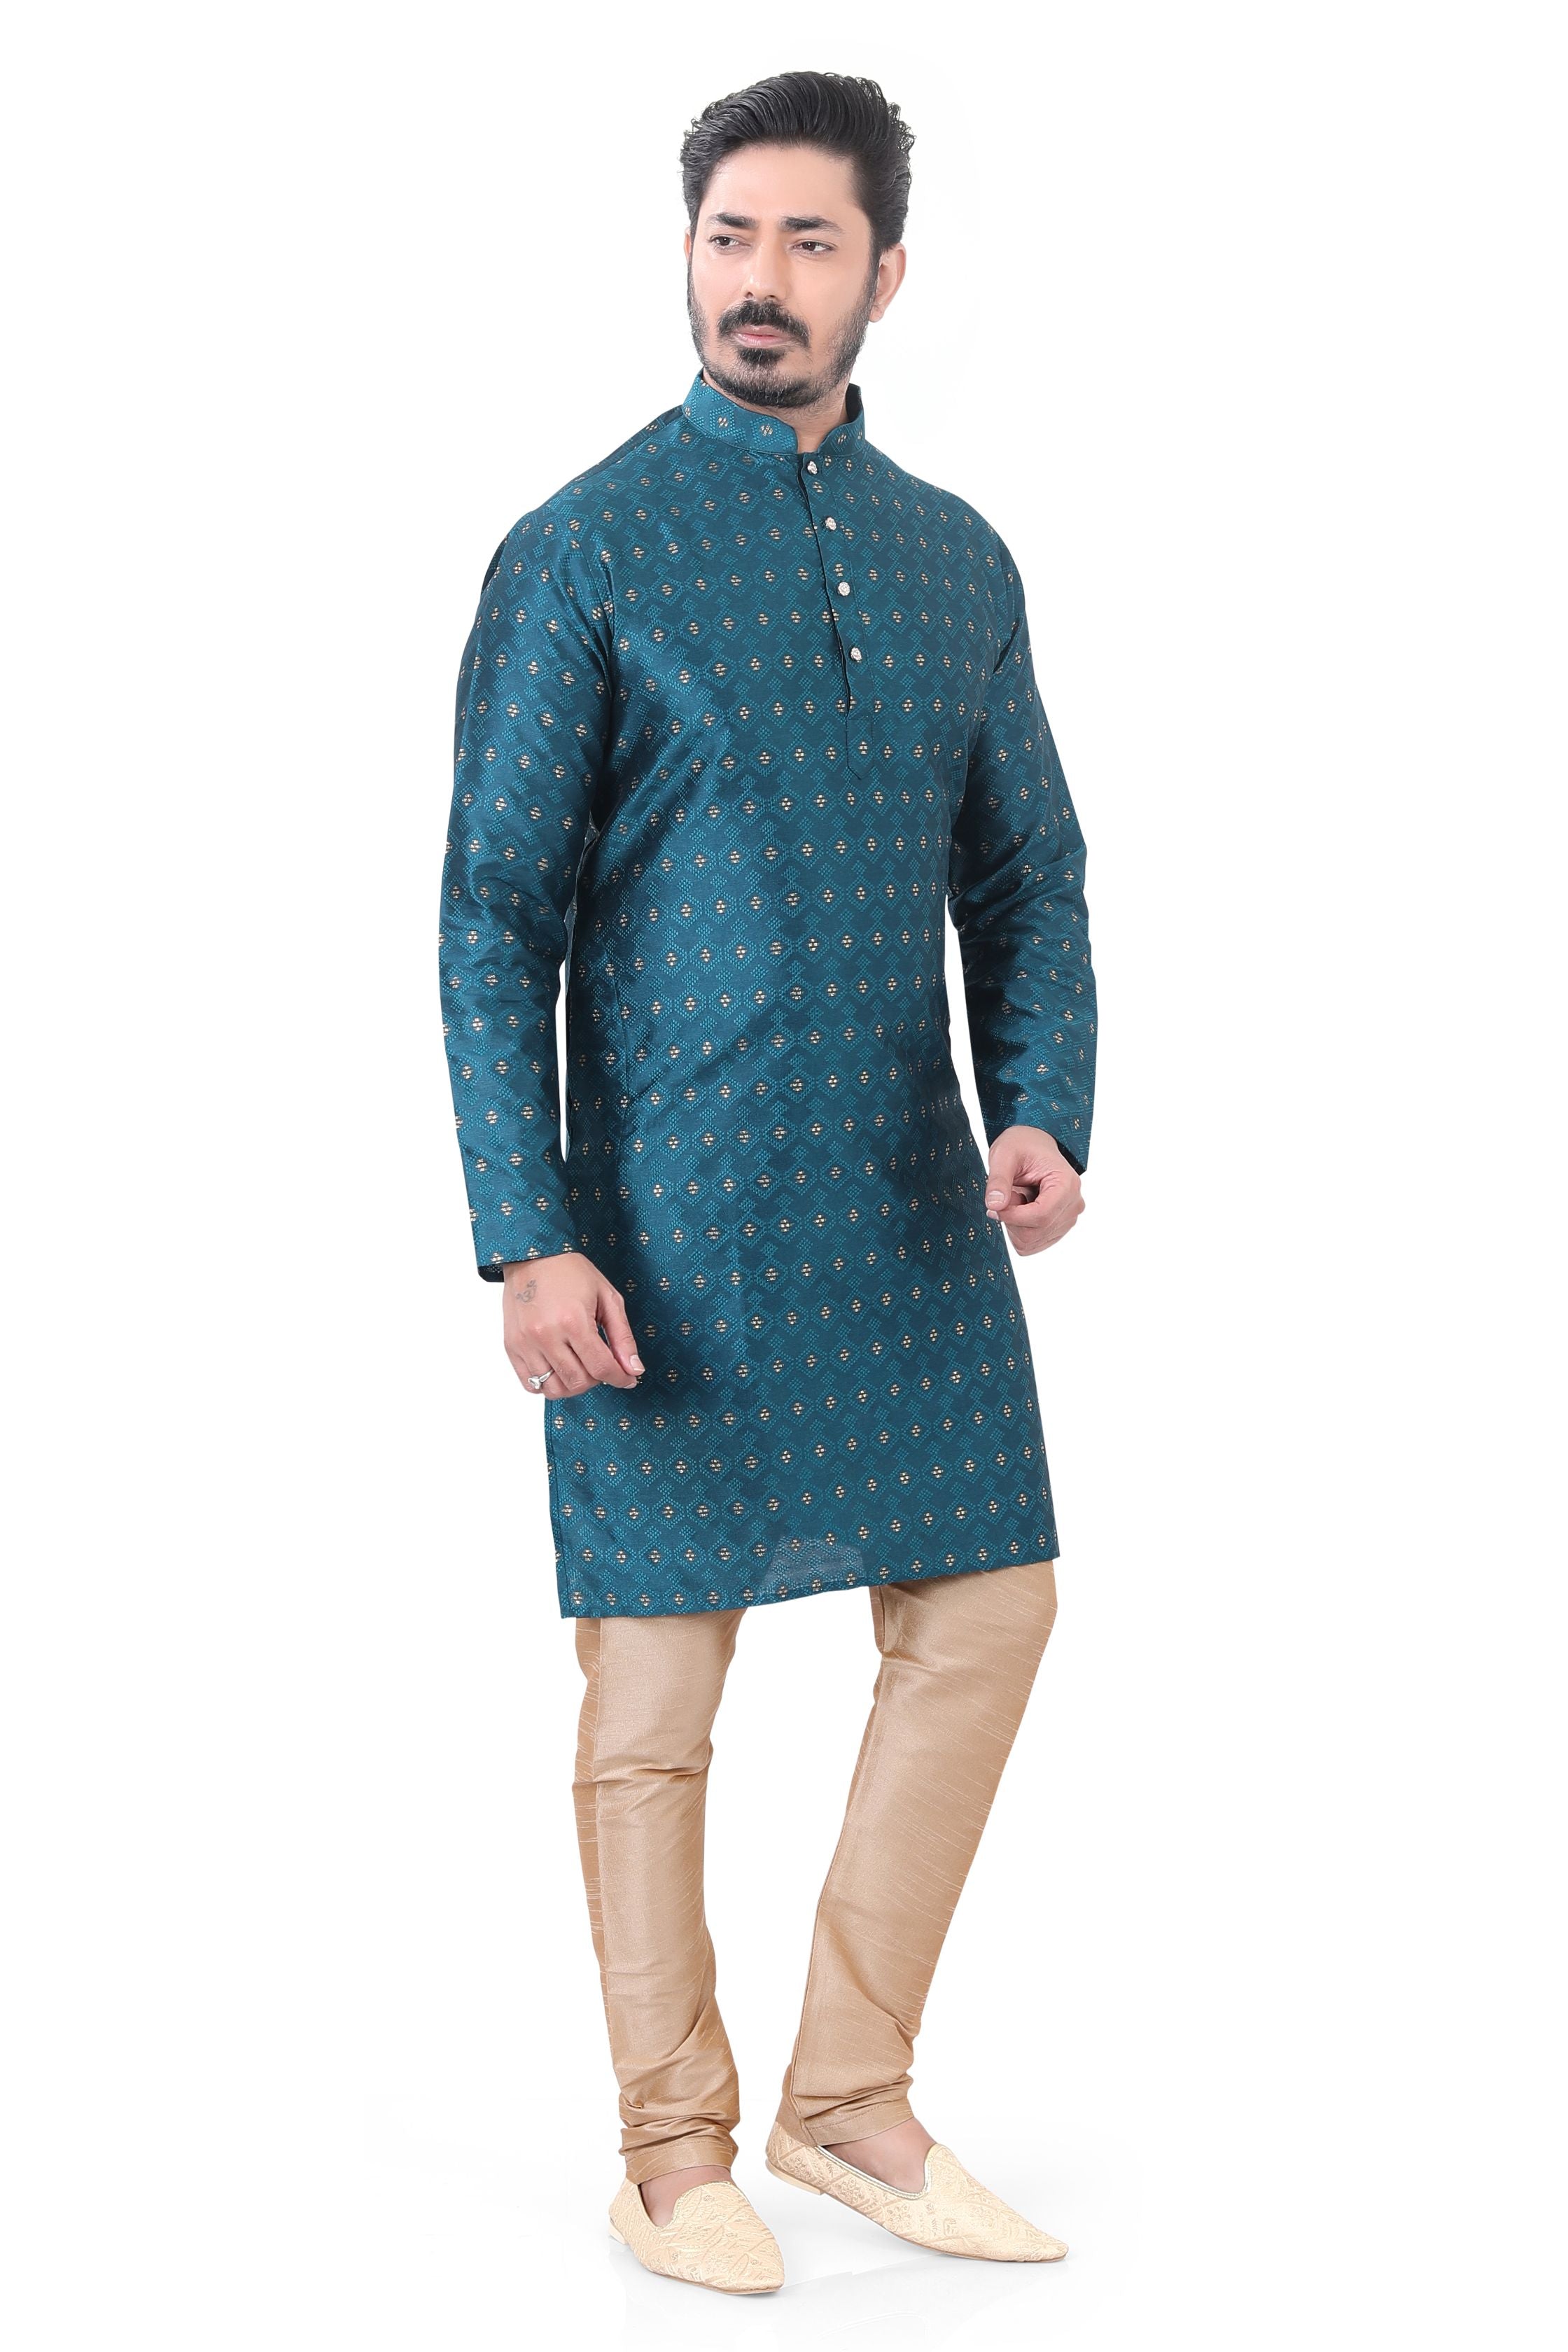 Rajwadi Silk Kurta pajama in Peacock blue